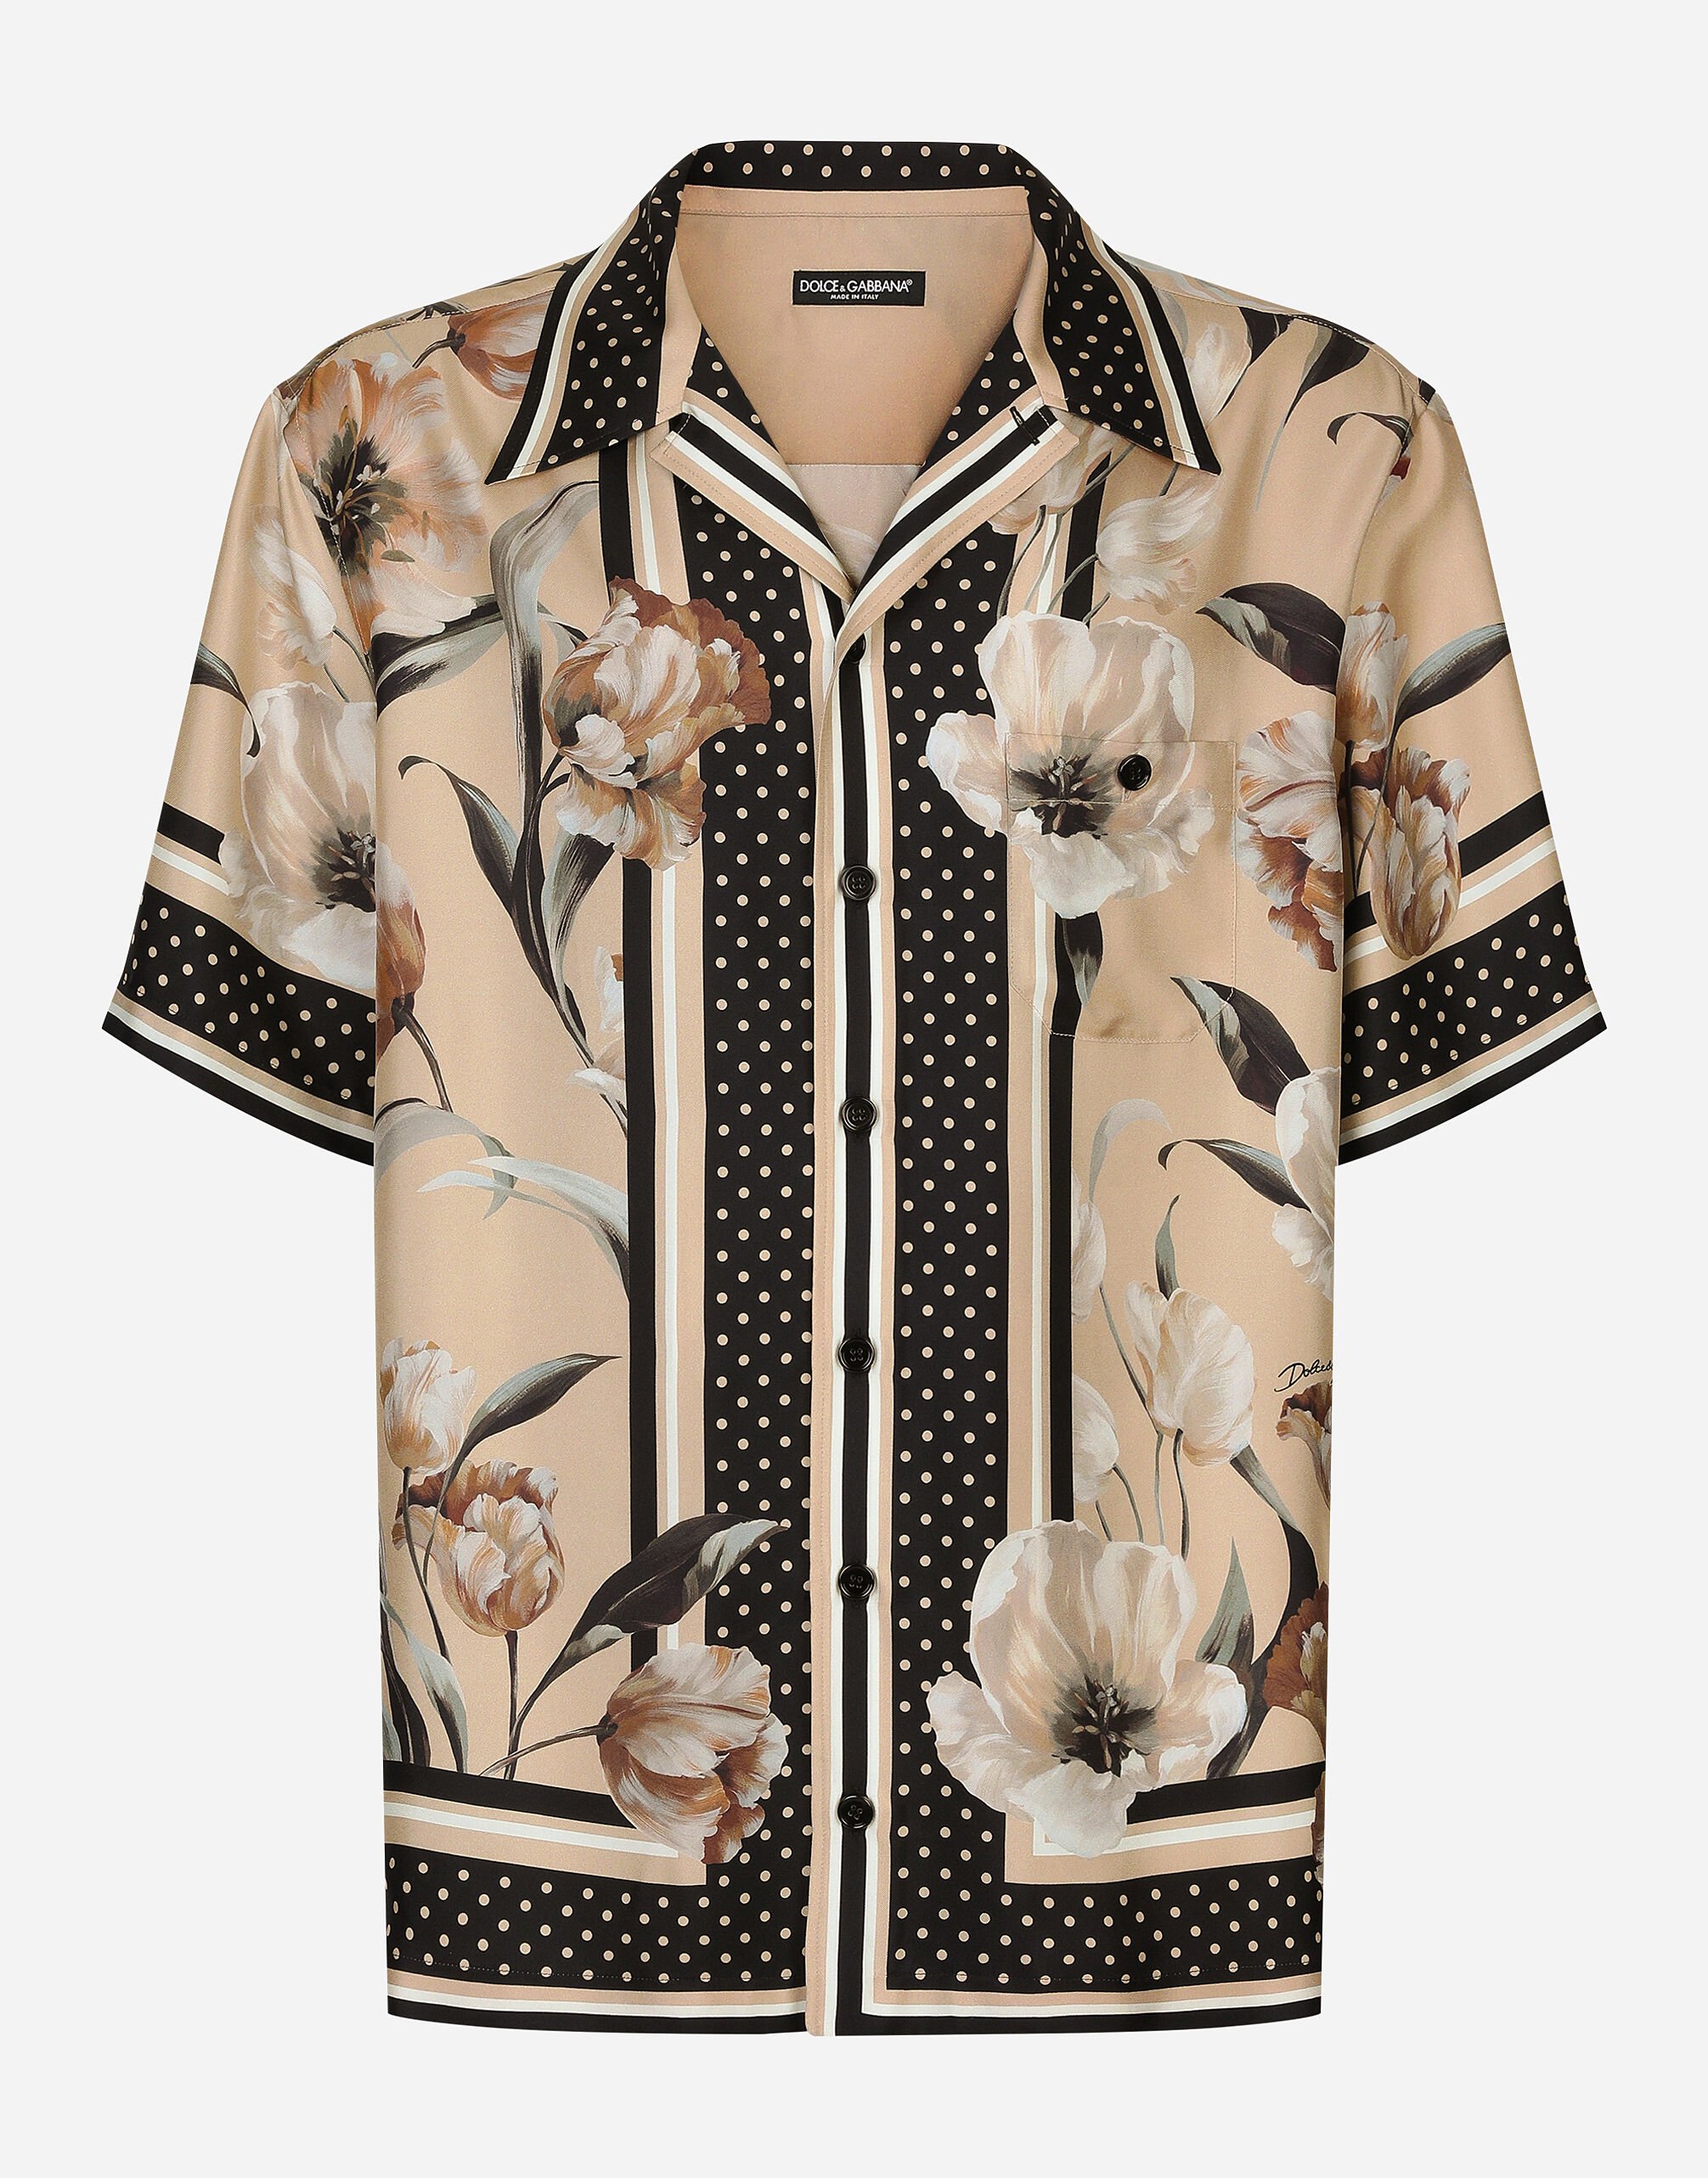 Dolce & Gabbana Camisa Hawaii en sarga de seda con estampado de flores Imprima G5JH9TIS1UW